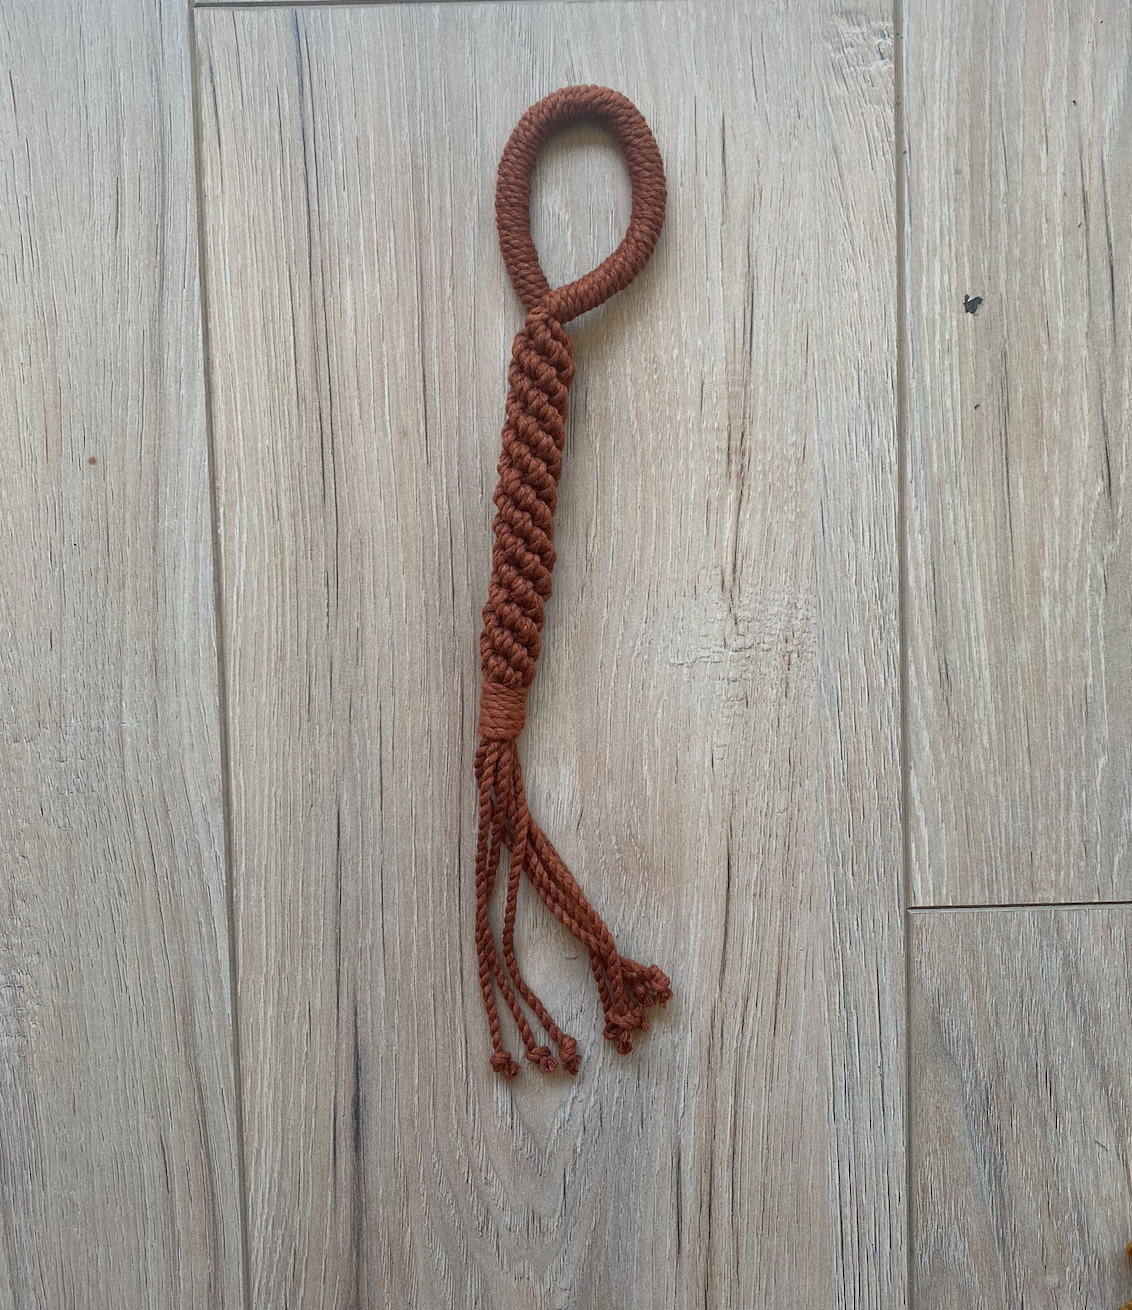 Dog Rope Tug Toy